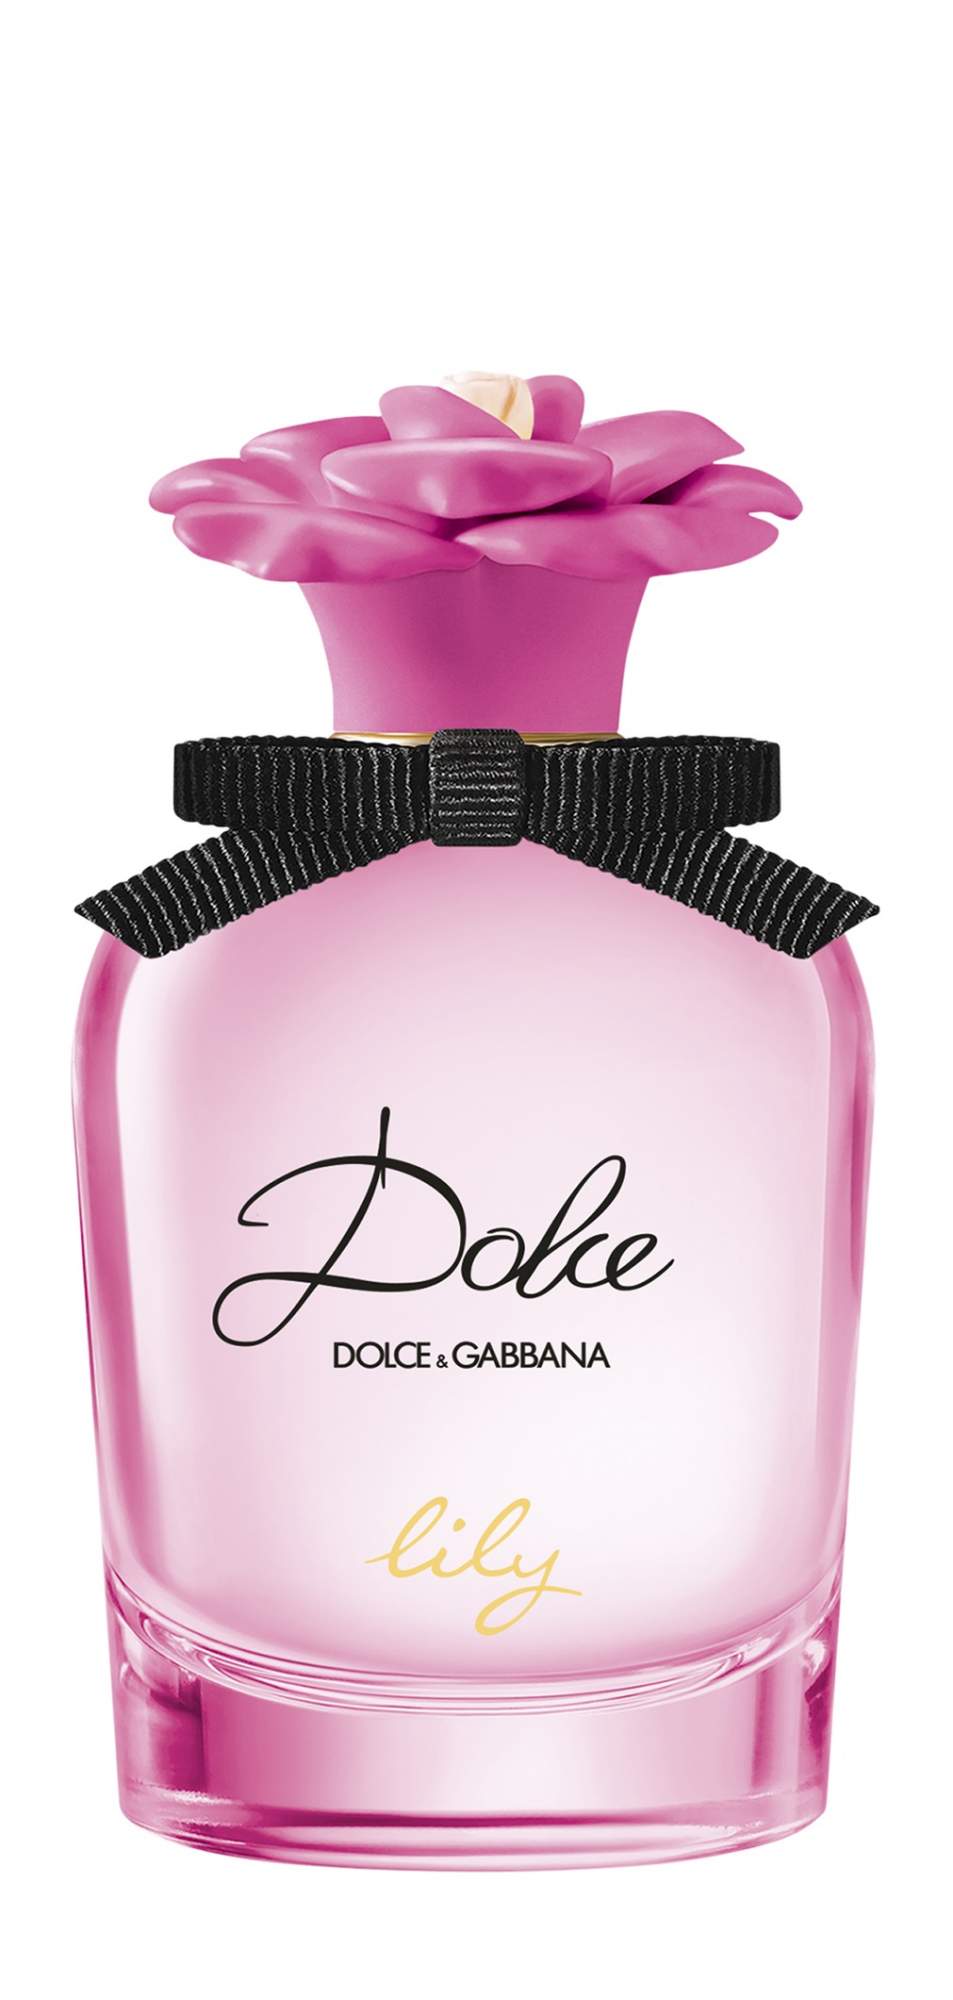 Купить туалетная вода Dolce & Gabbana Dolce Lily Eau de Toilette, 50 мл, цены на Мегамаркет | Артикул: 600006728933